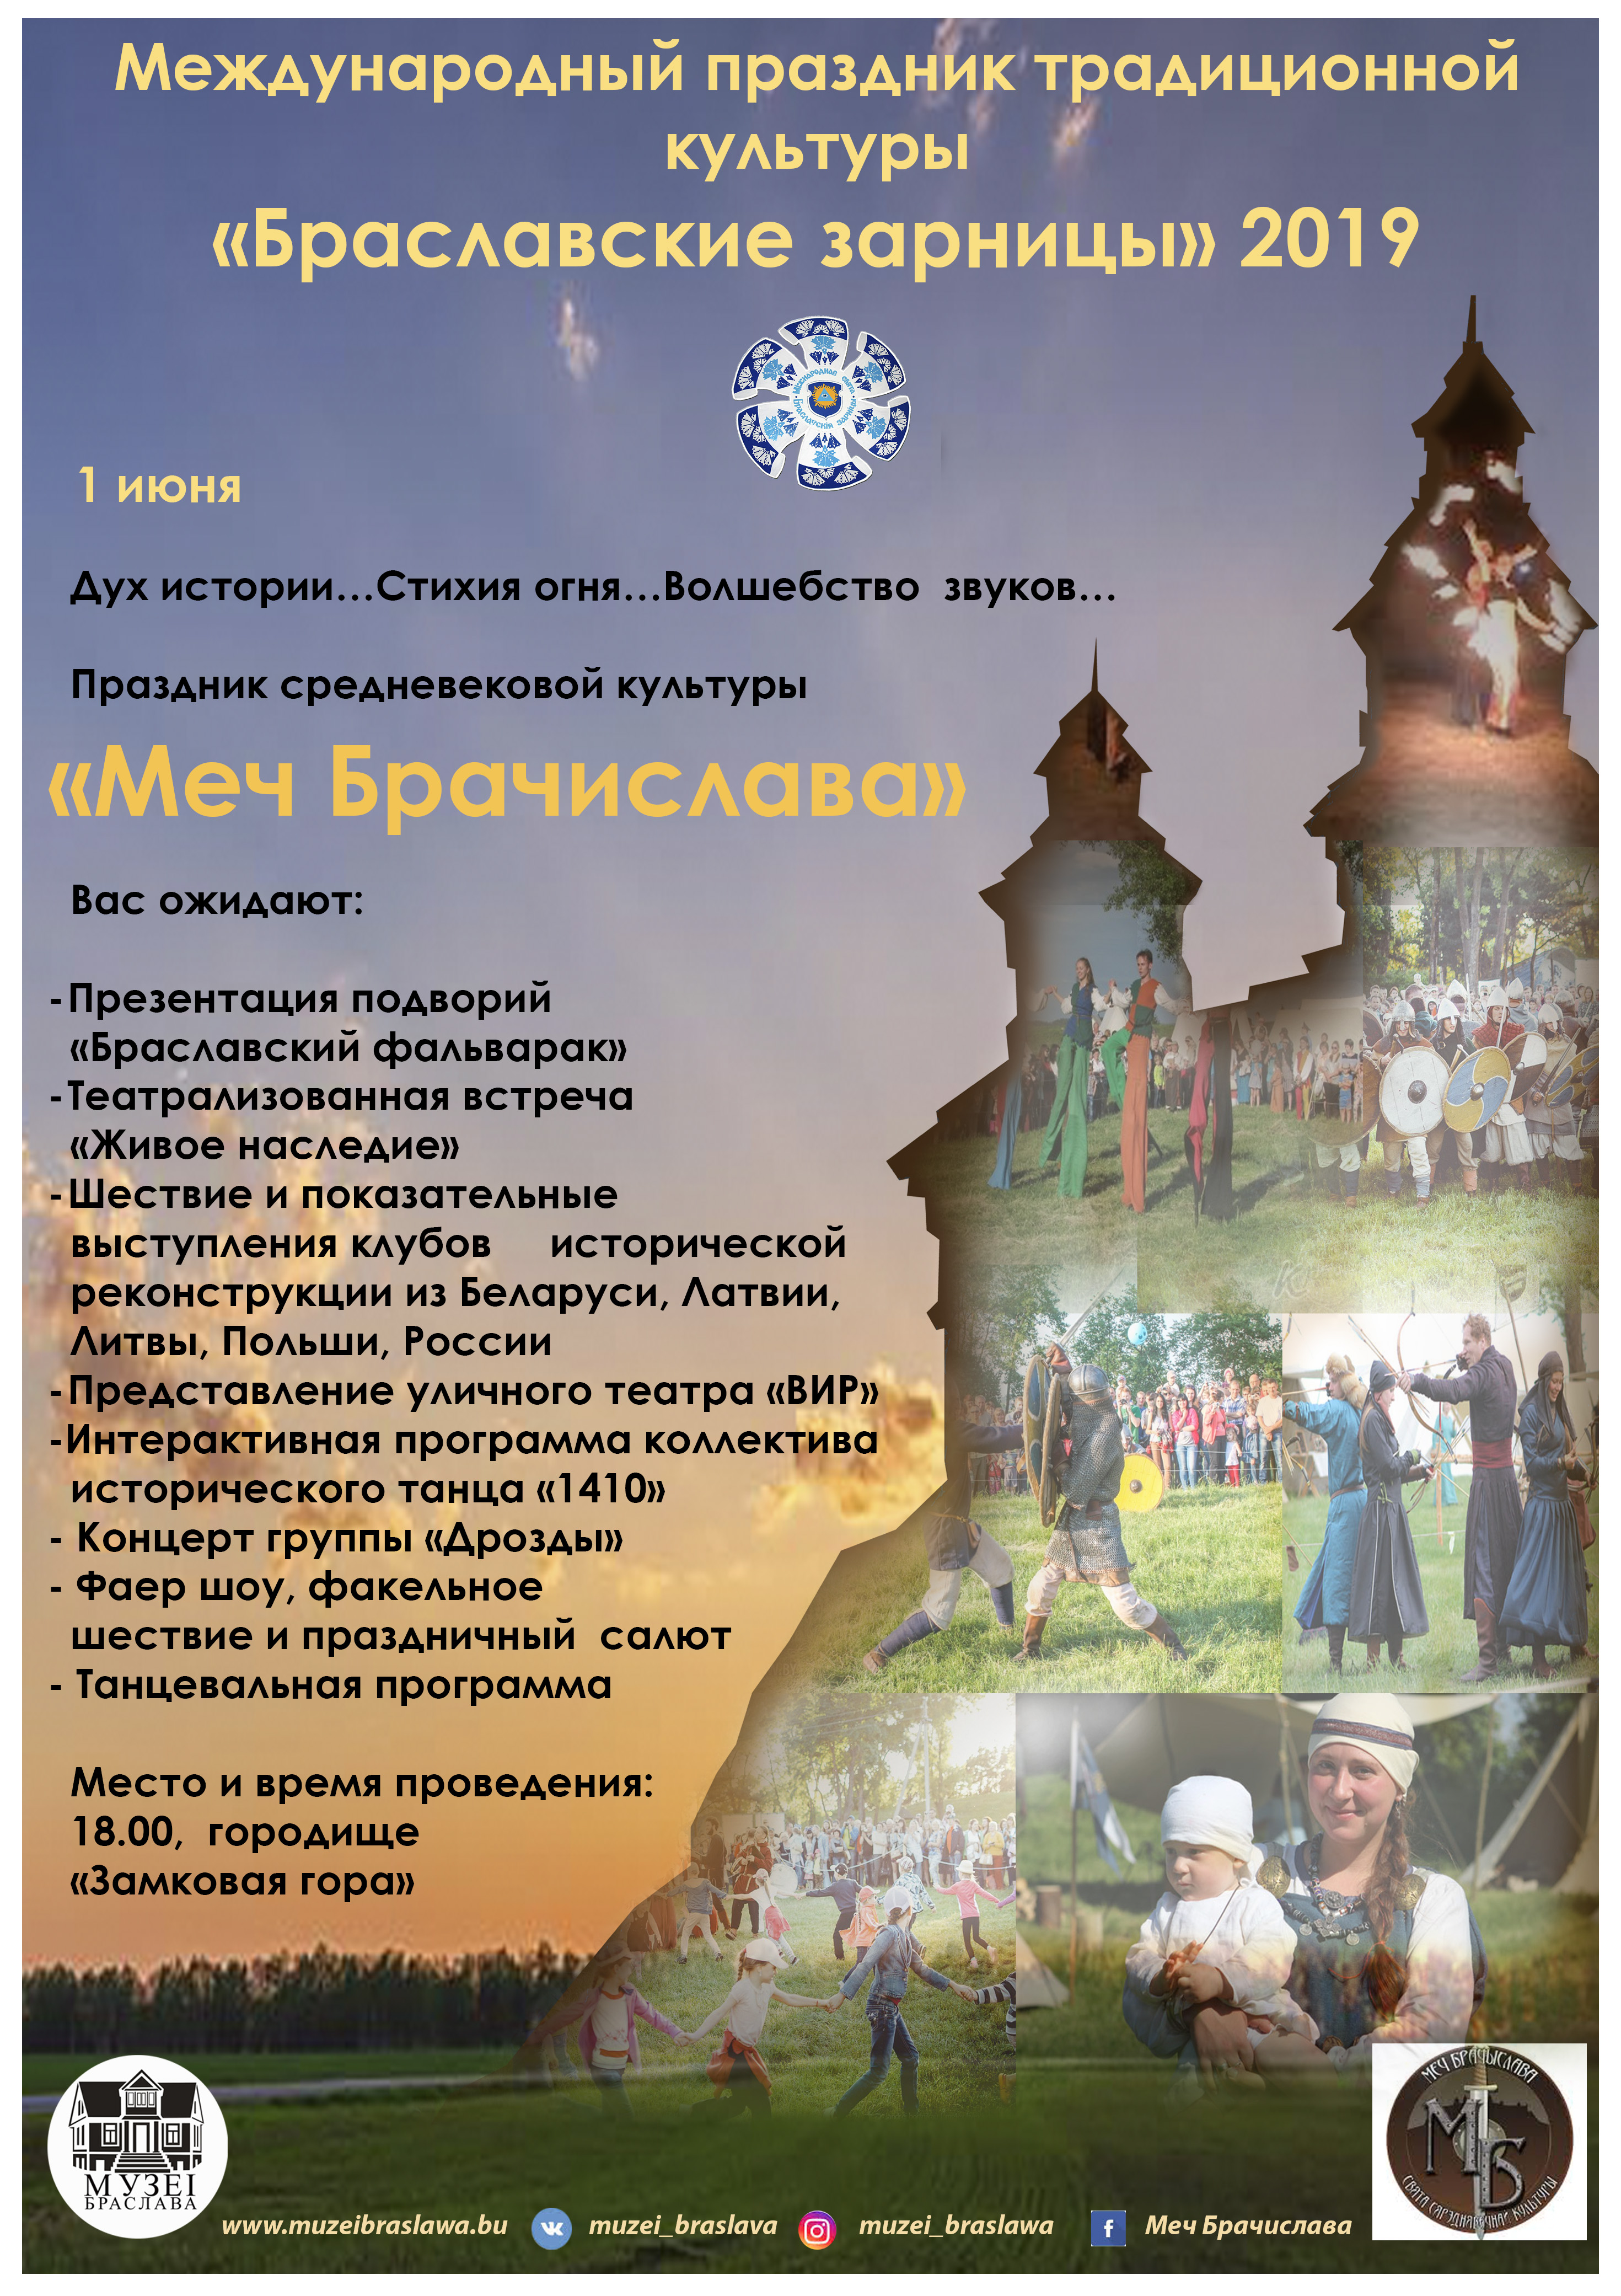 Браславские зарницы 2019 программа Меч Брачислава